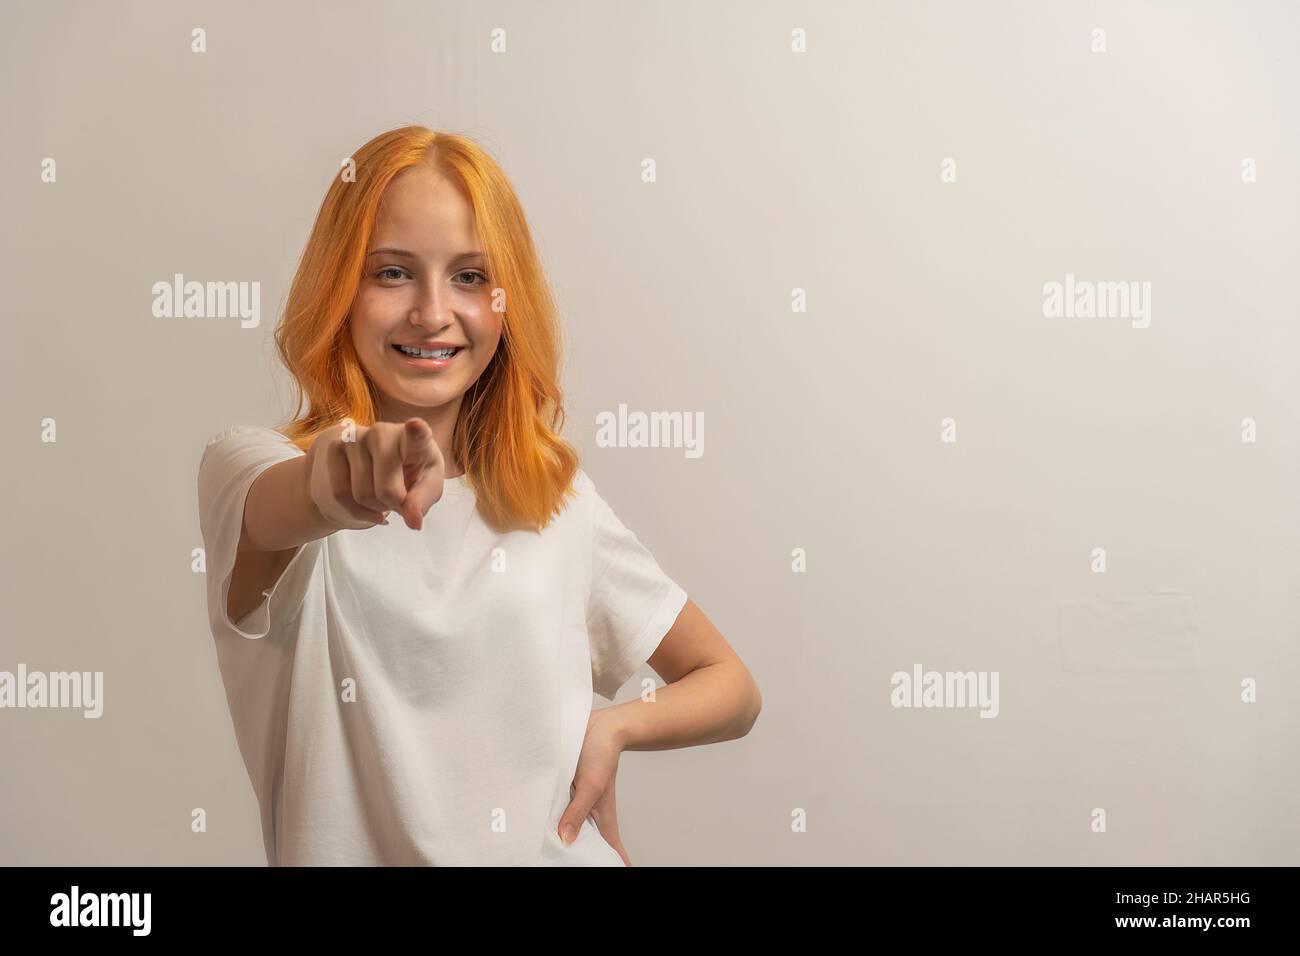 jeune fille avec des cheveux rouges dans un t-shirt blanc sur un fond clair pointe le doigt vers l'avant. Banque D'Images